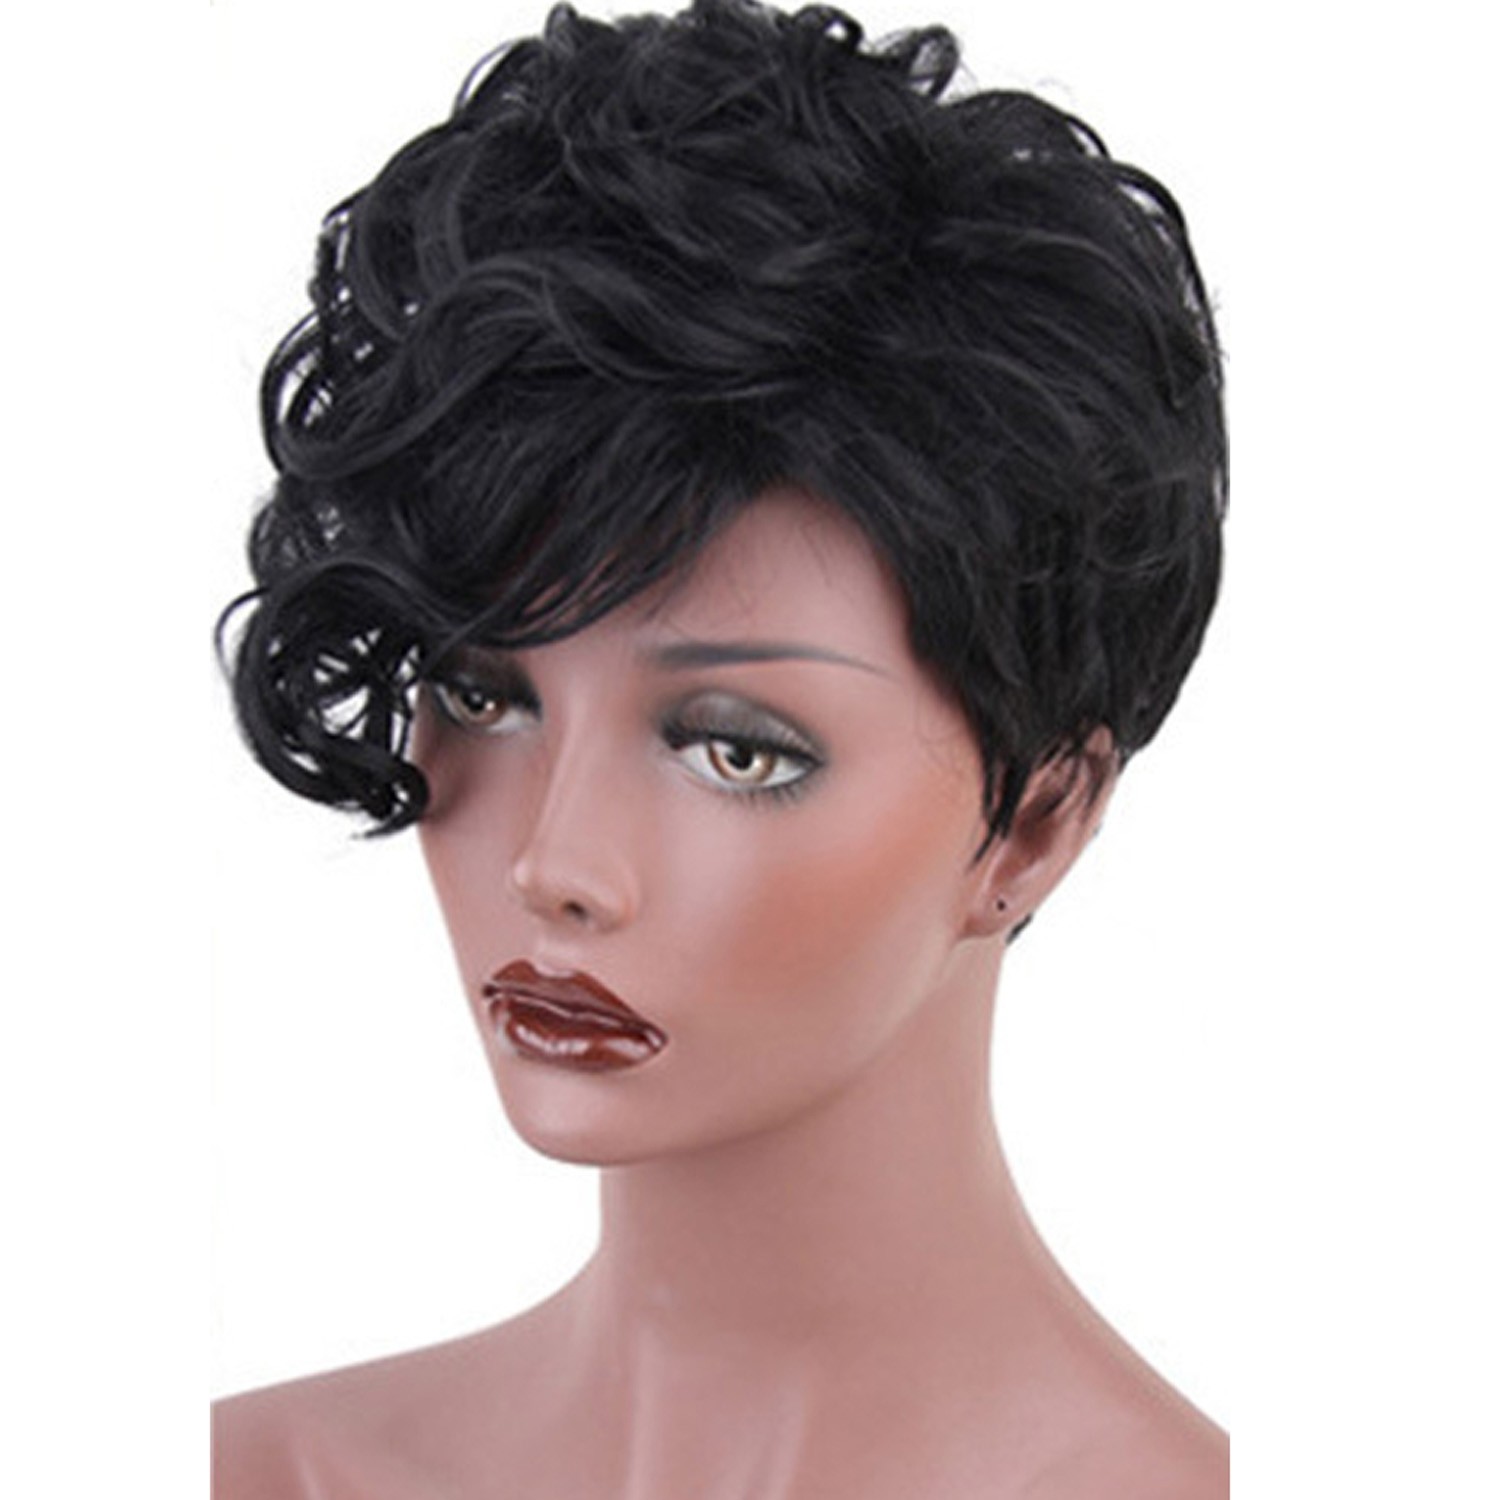 Fashion Pixie Cut Wigs for Women - heywigs.com